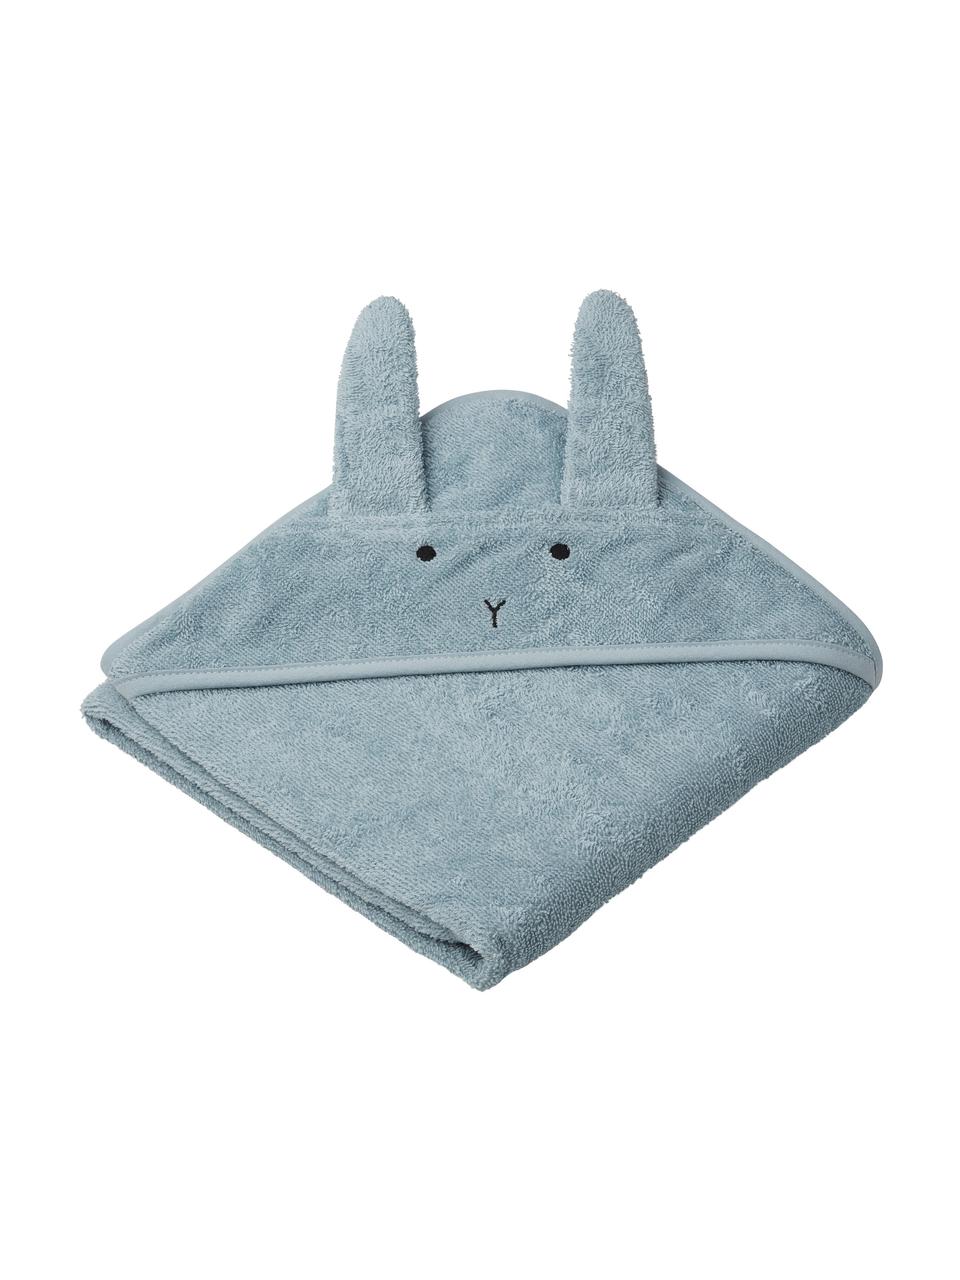 Ręcznik dla dzieci Albert Rabbit, 100% bawełna organiczna (frotte), Niebieski, S 70 x D 70 cm